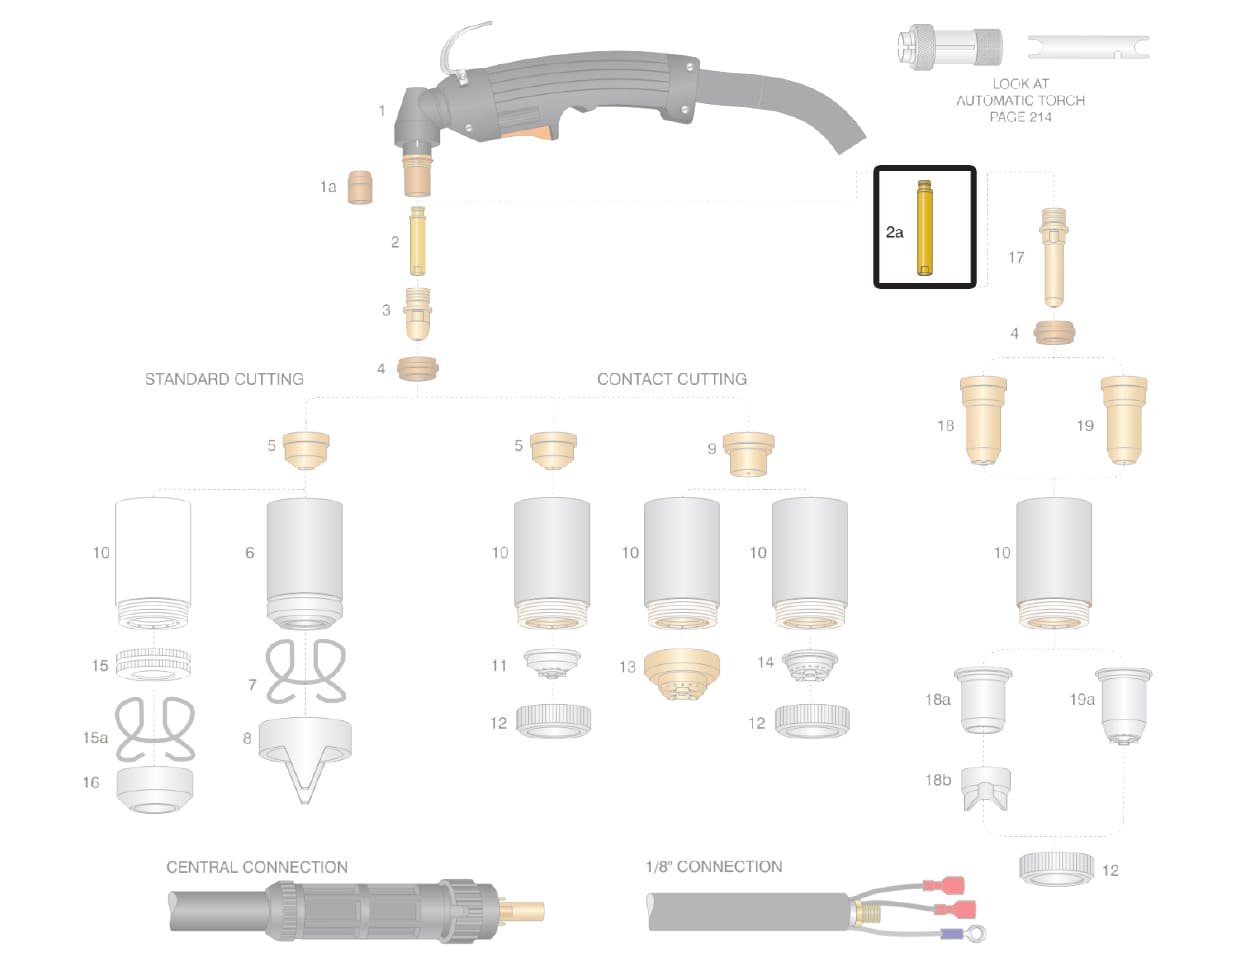 Dettaglio diffusore tubetto ottone prolunga lungo torcia cebora p150 cp160 p90 p120 plasma